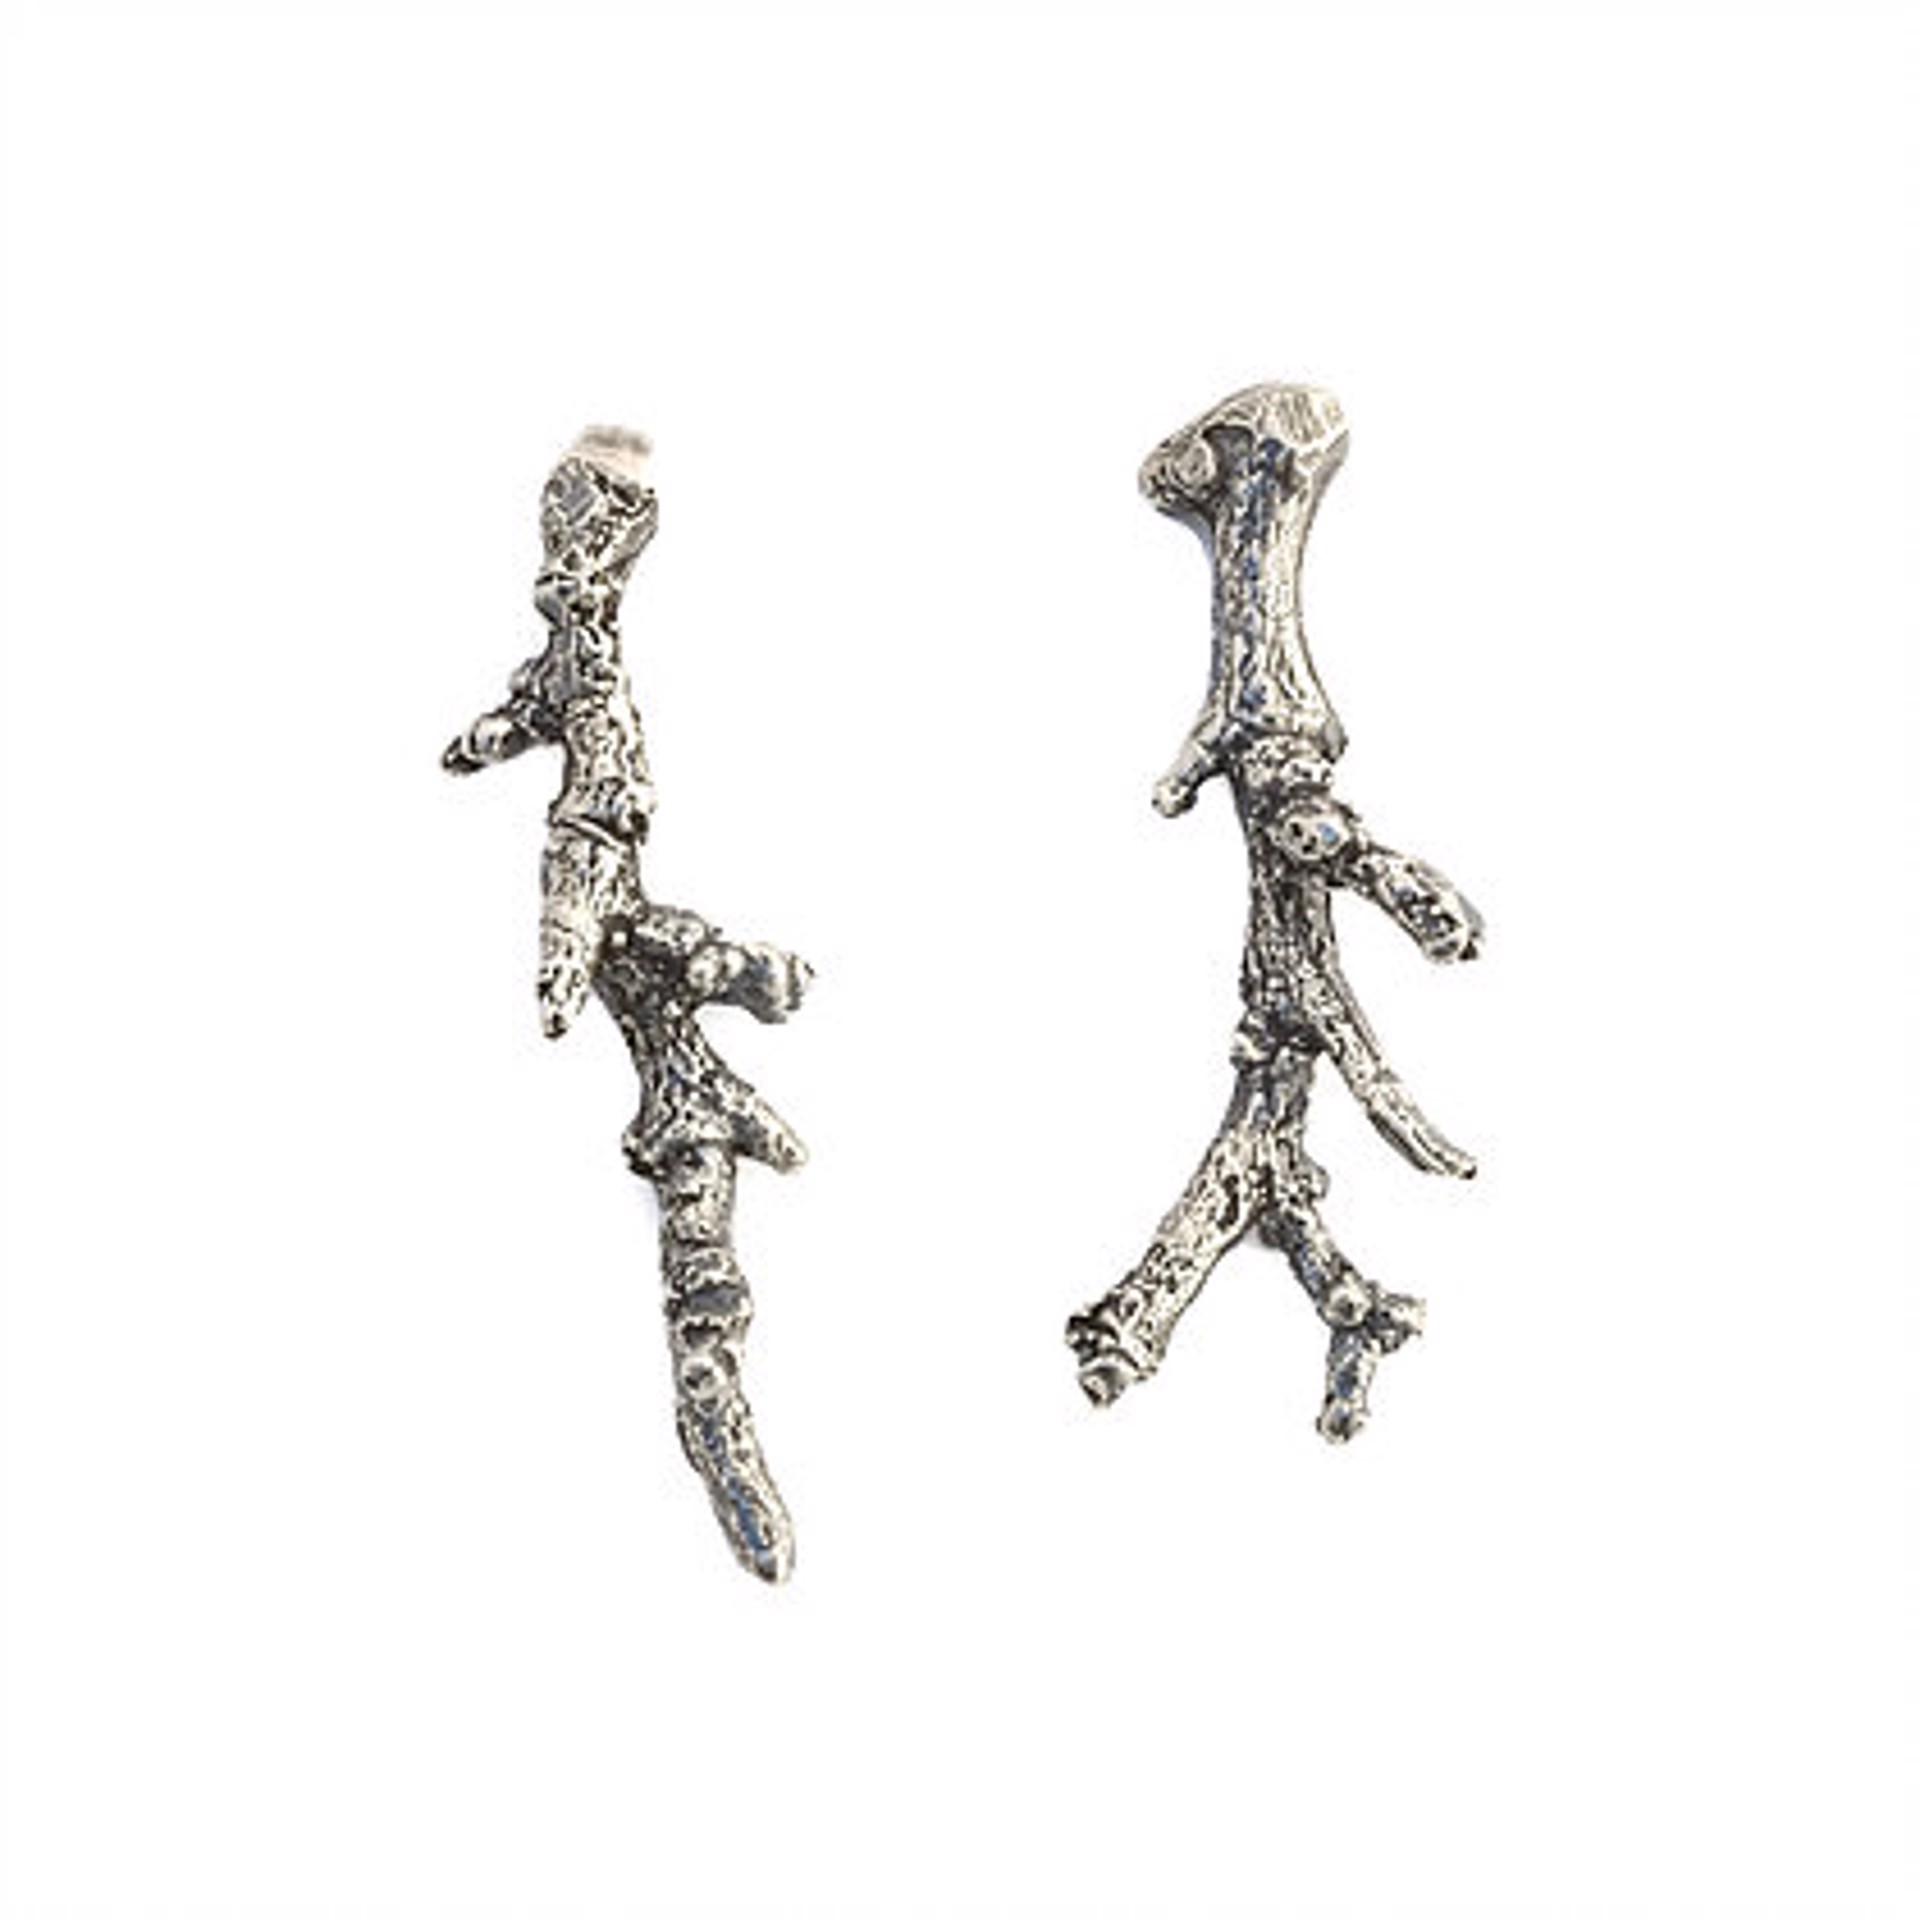 Twigs Small Earrings by April Ottey